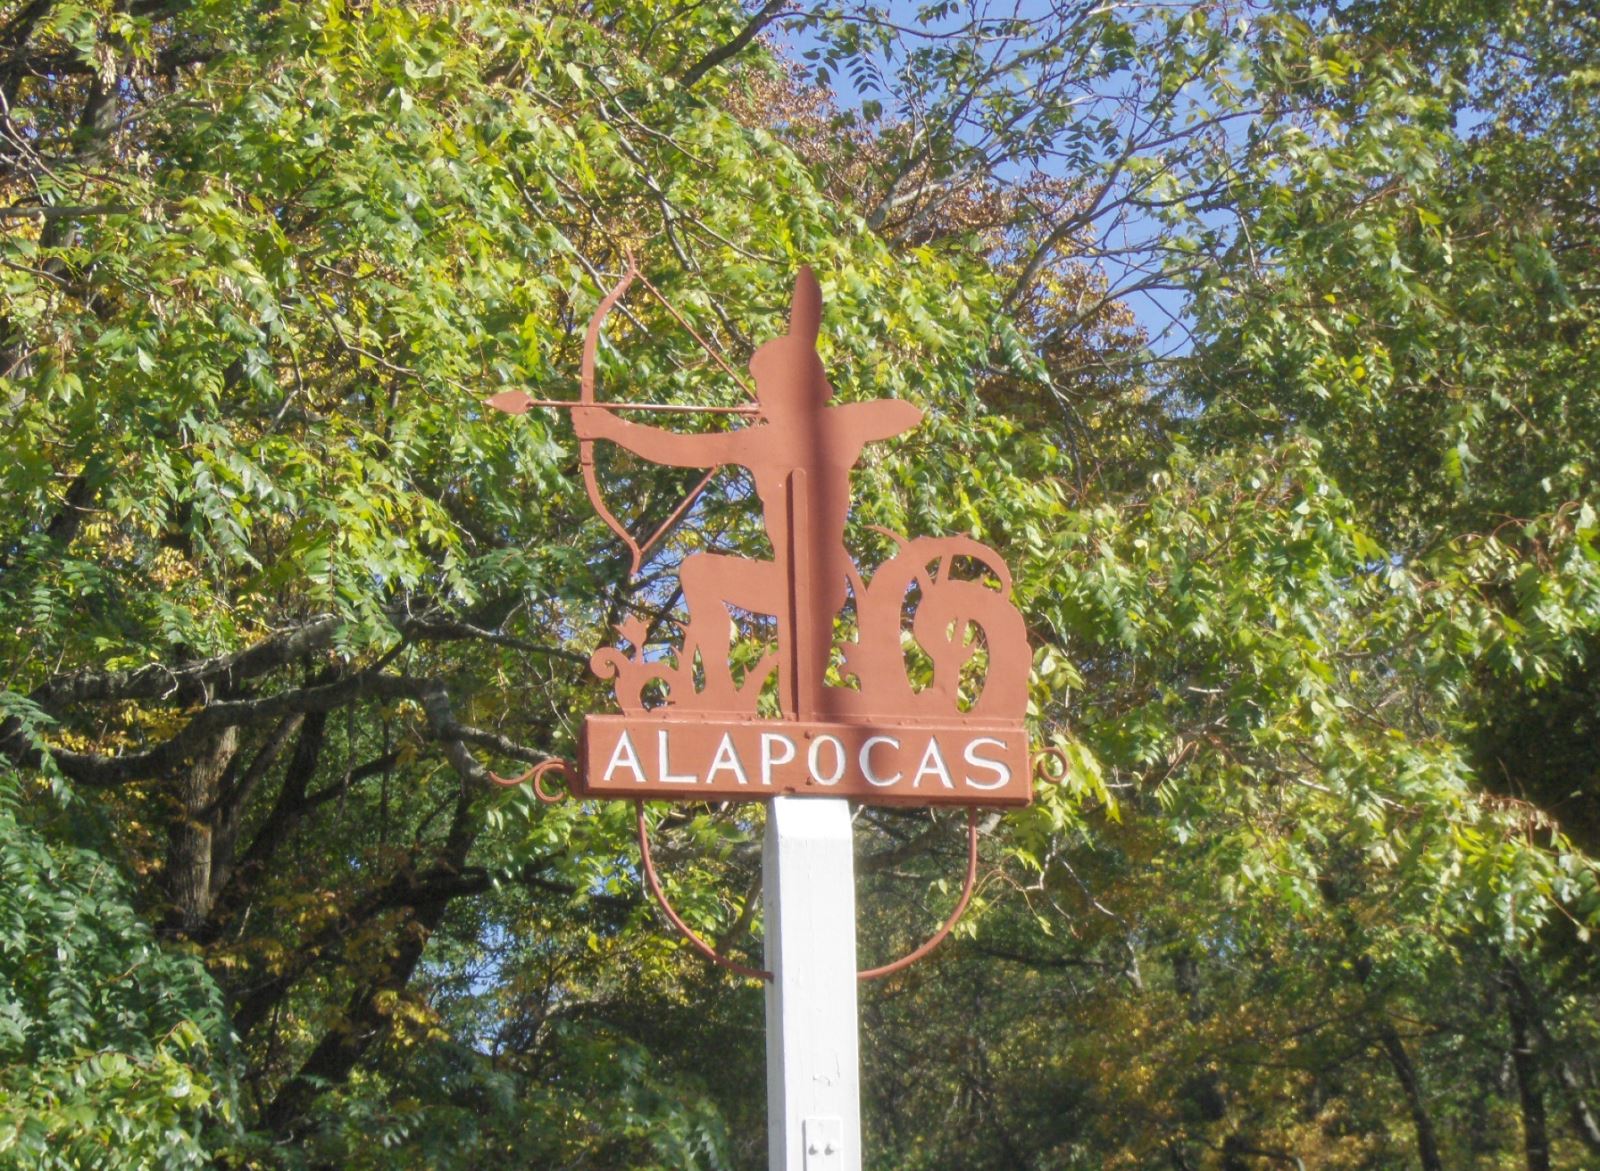 alapocas